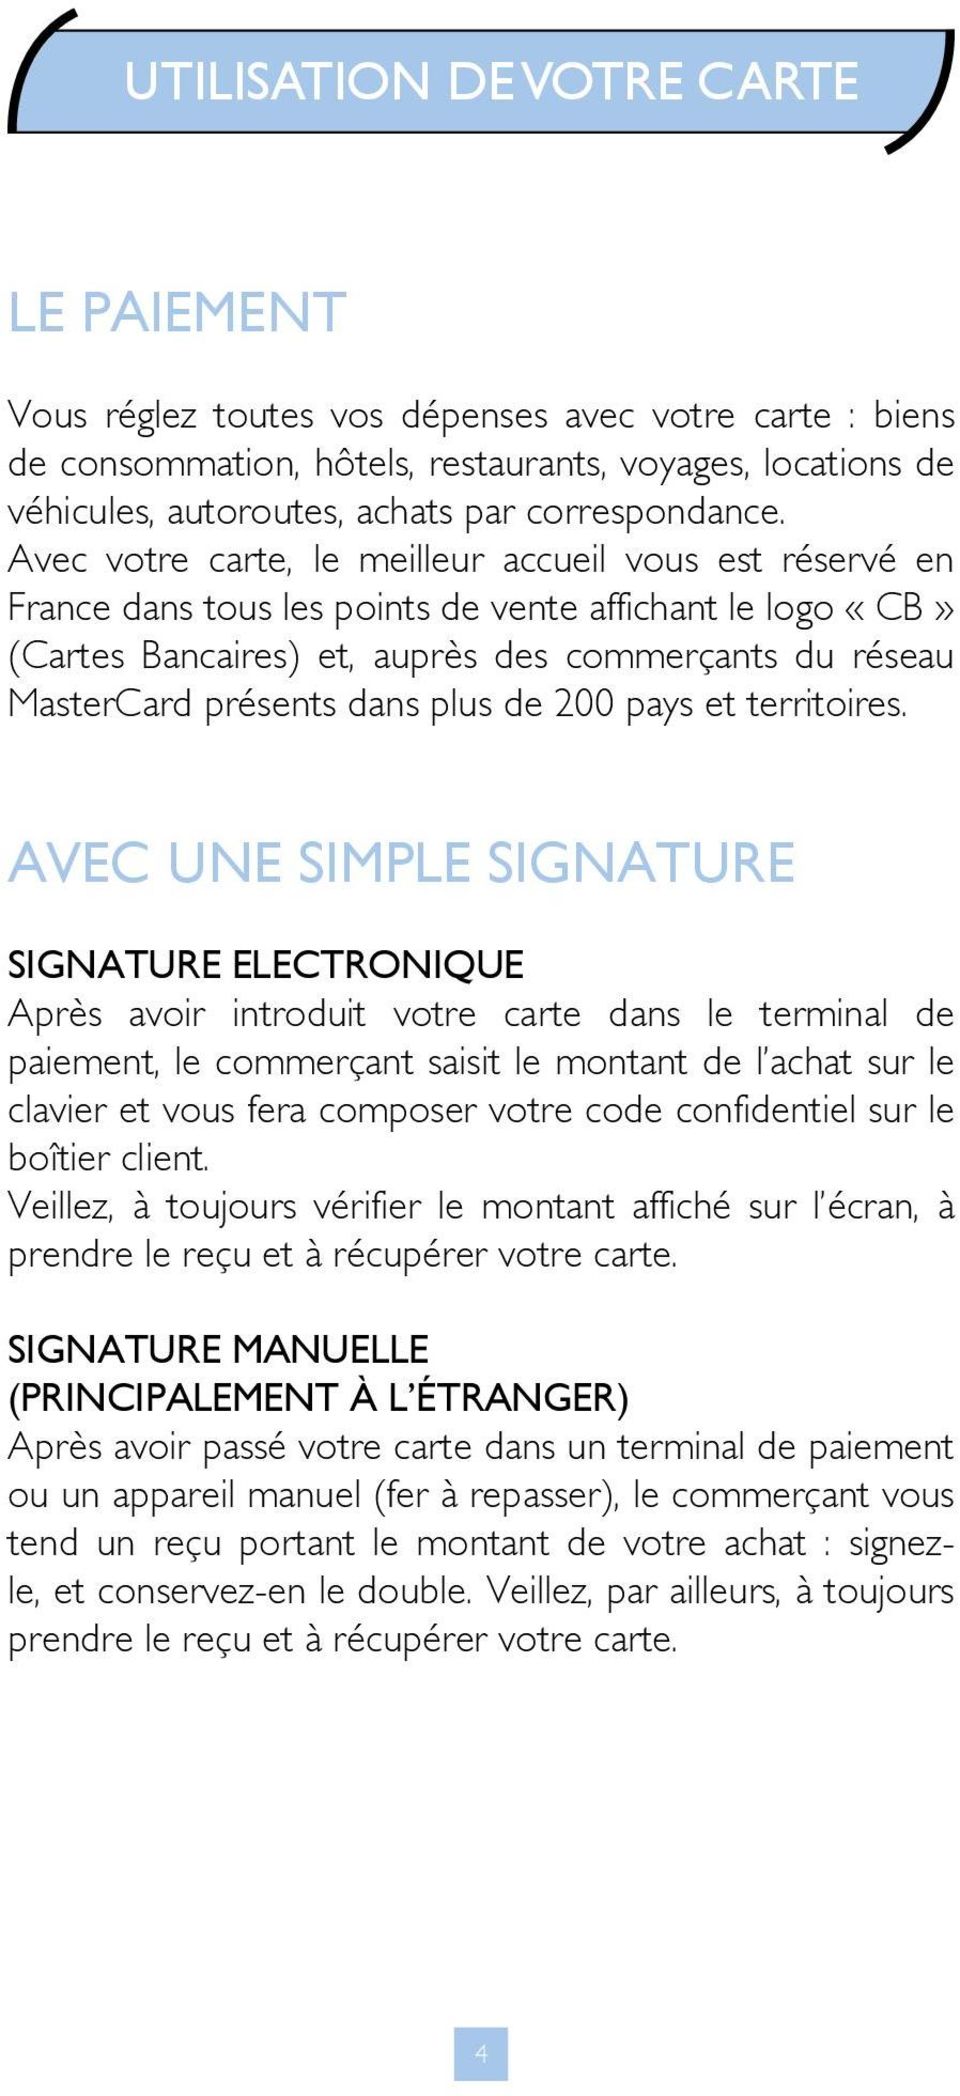 Avec votre carte, le meilleur accueil vous est réservé en France dans tous les points de vente affichant le logo «CB» (Cartes Bancaires) et, auprès des commerçants du réseau MasterCard présents dans